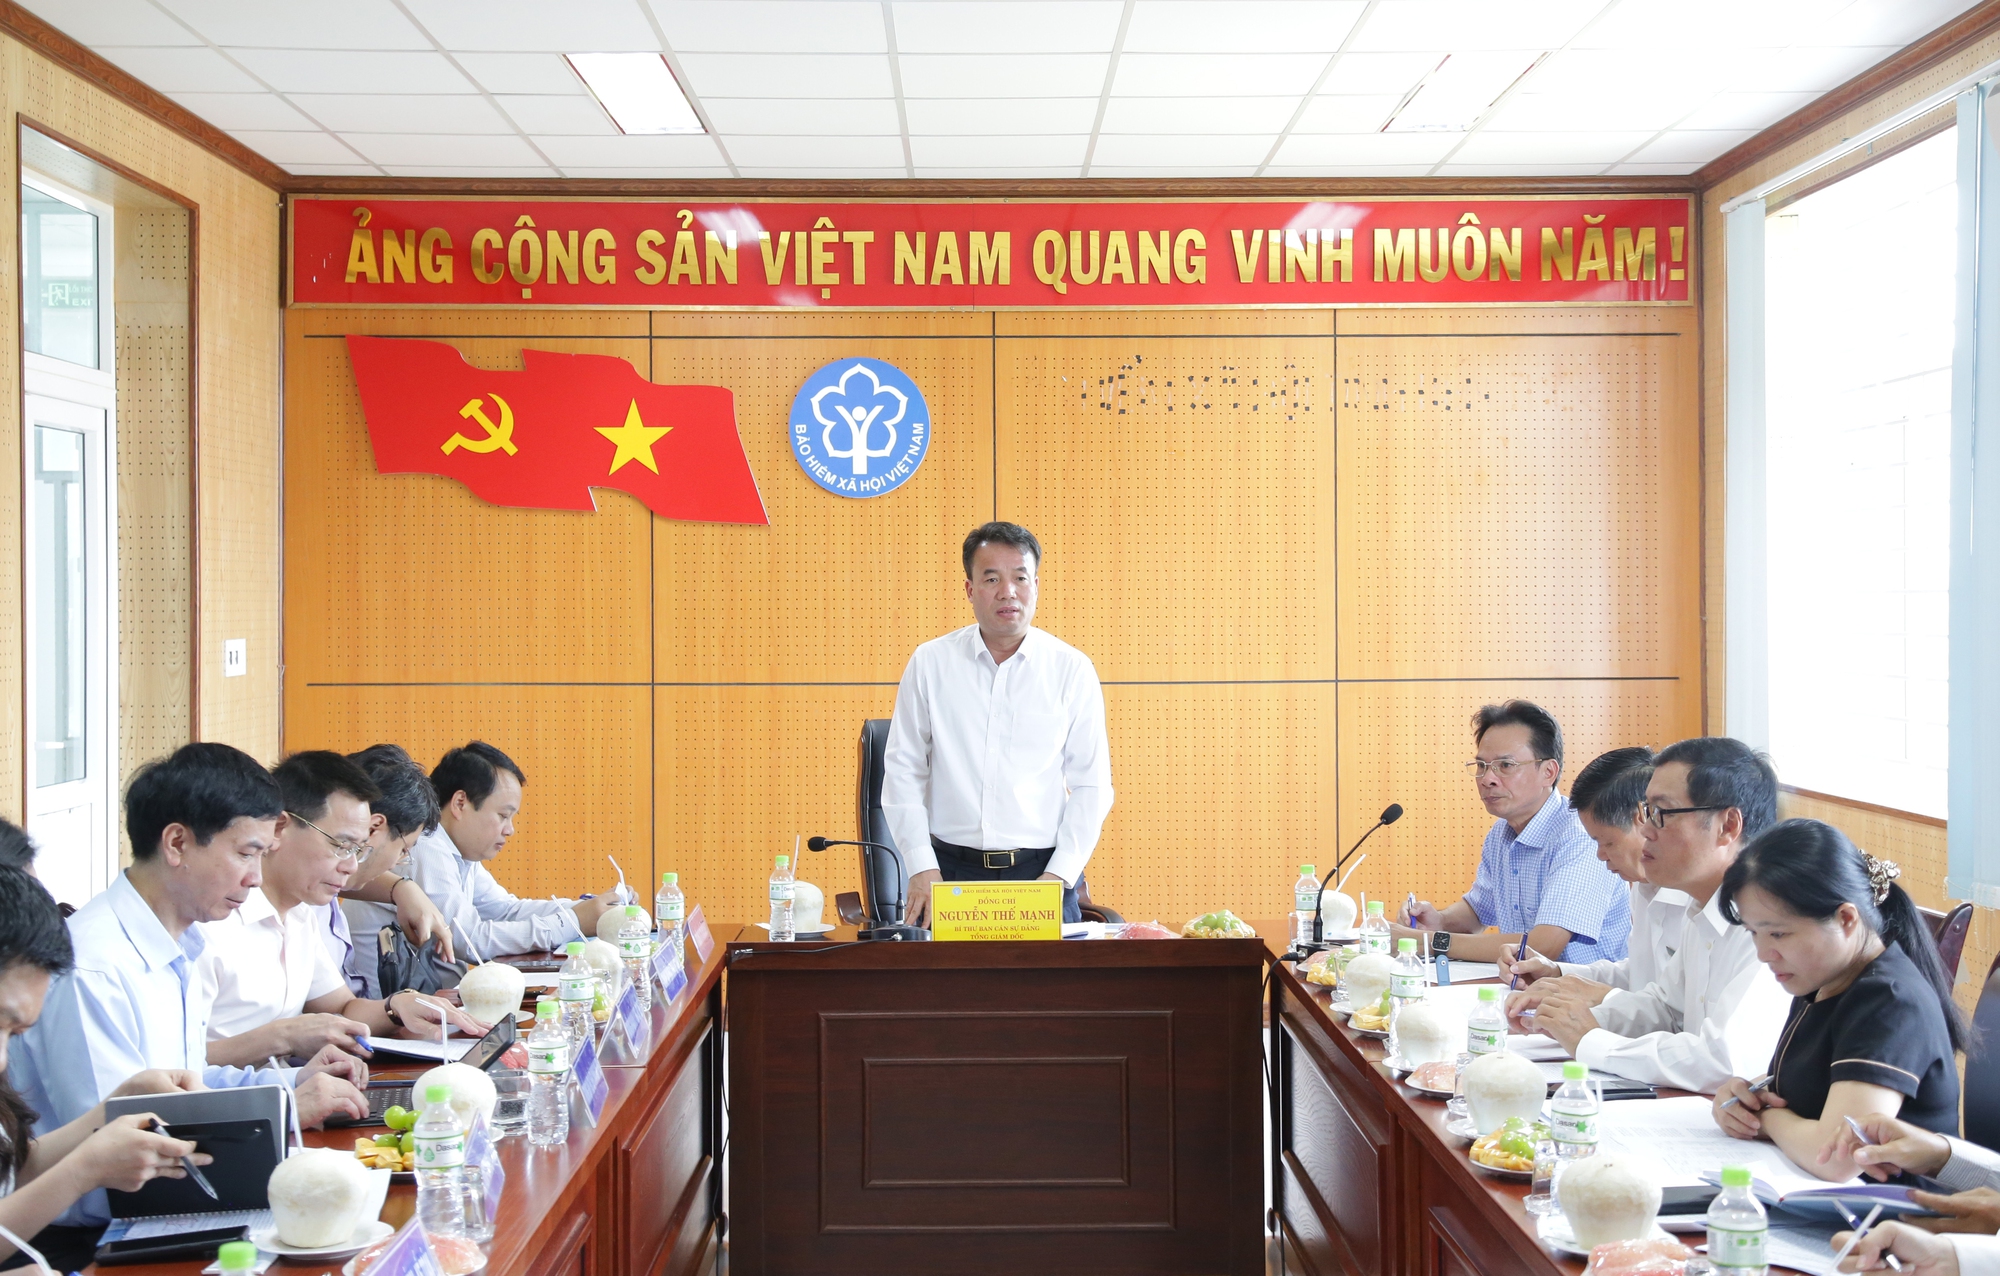 Tổng Giám đốc BHXH Việt Nam: Phát triển BHYT là trách nhiệm giúp người dân không rơi vào nghèo đói khi ốm đau, bệnh tật

- Ảnh 1.